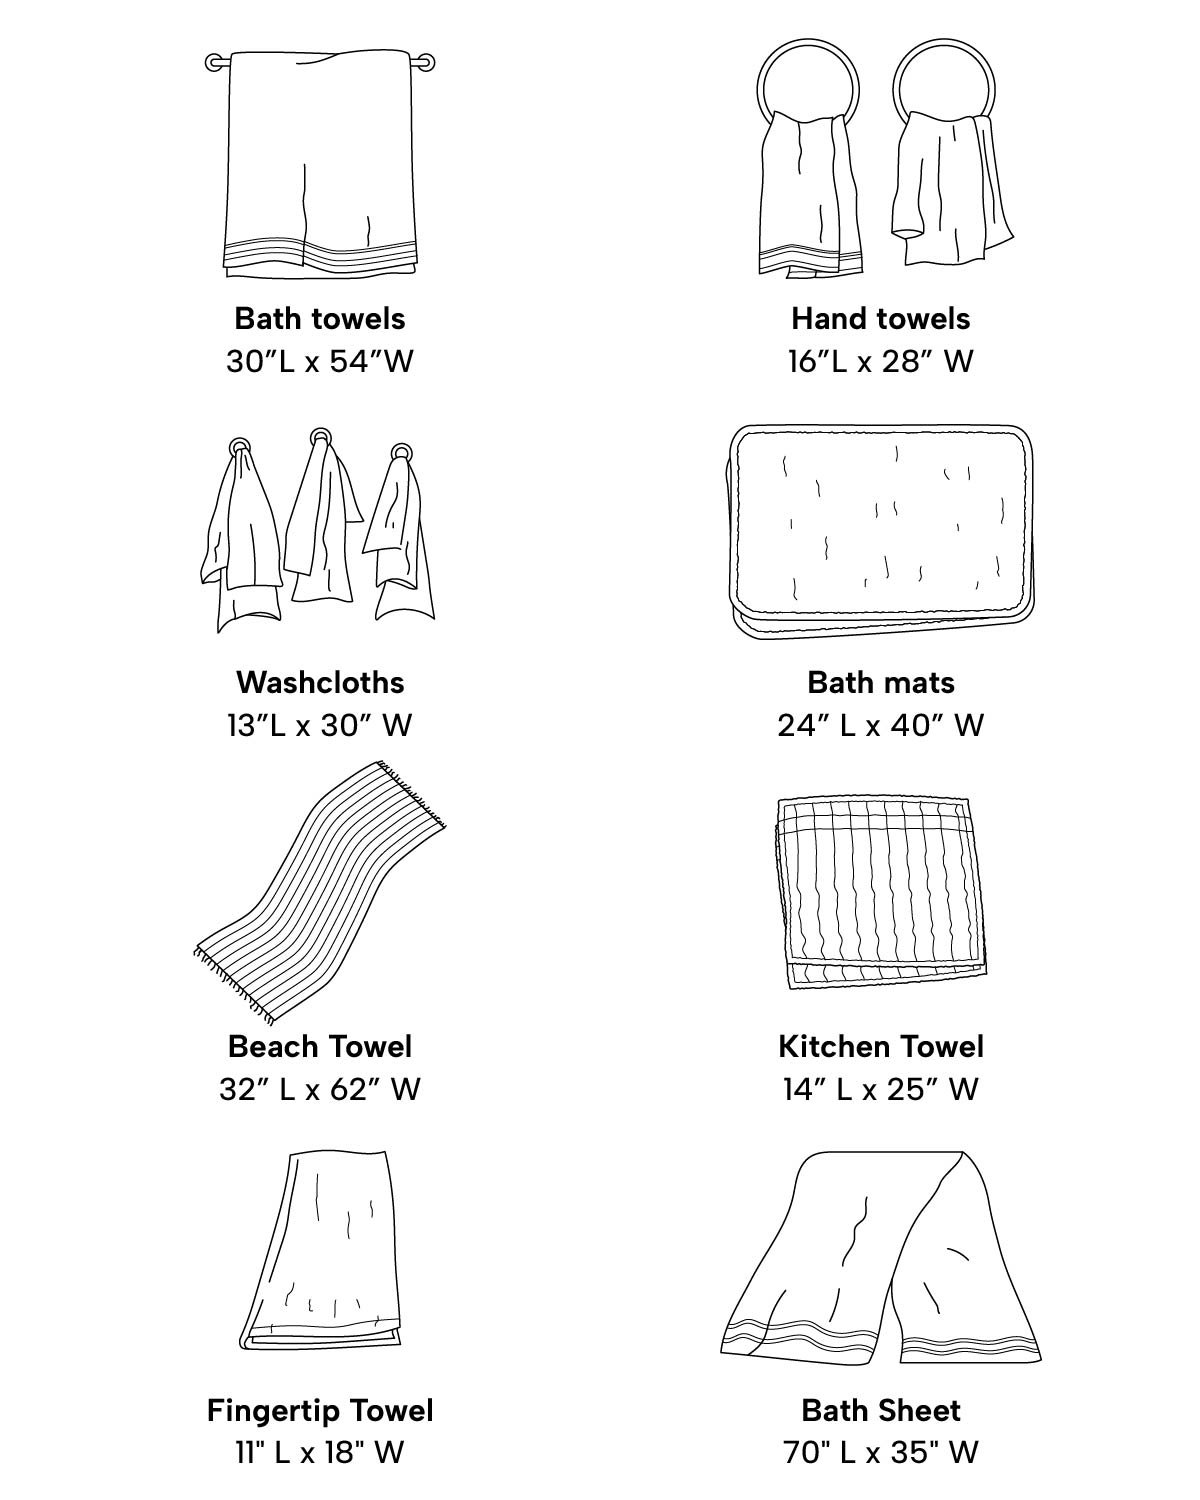 图表显示了不同类型的毛巾